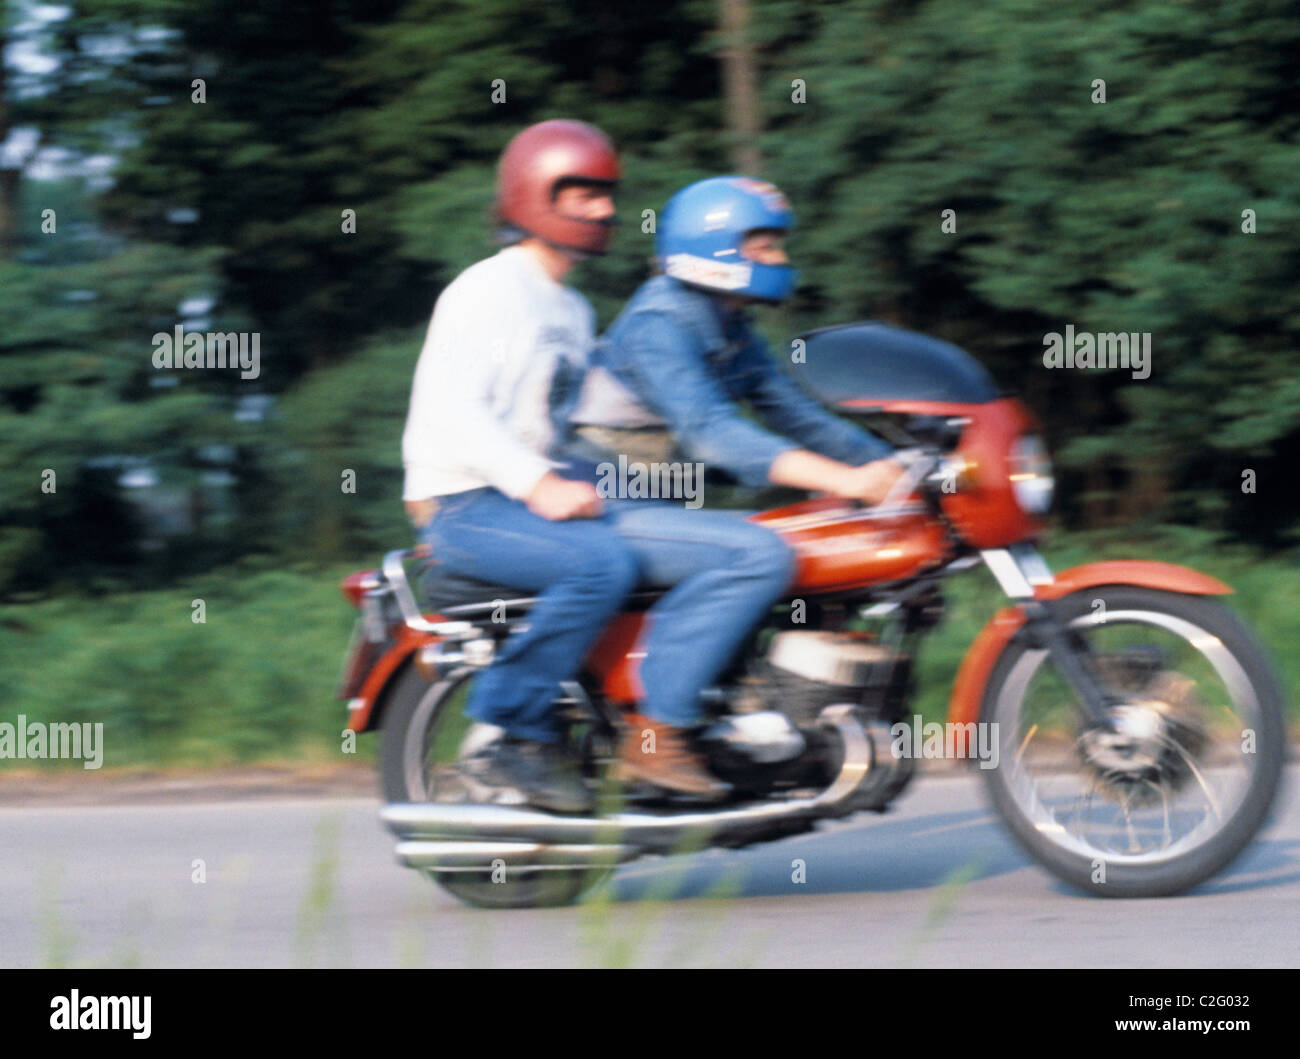 Années 70, les gens, la circulation, la sécurité routière, de la jeunesse, deux jeunes gens assis sur une moto roulant sur une route de campagne, conducteur, passager, leurs casques, floues, brouillées, âgés de 16 à 23 ans Banque D'Images